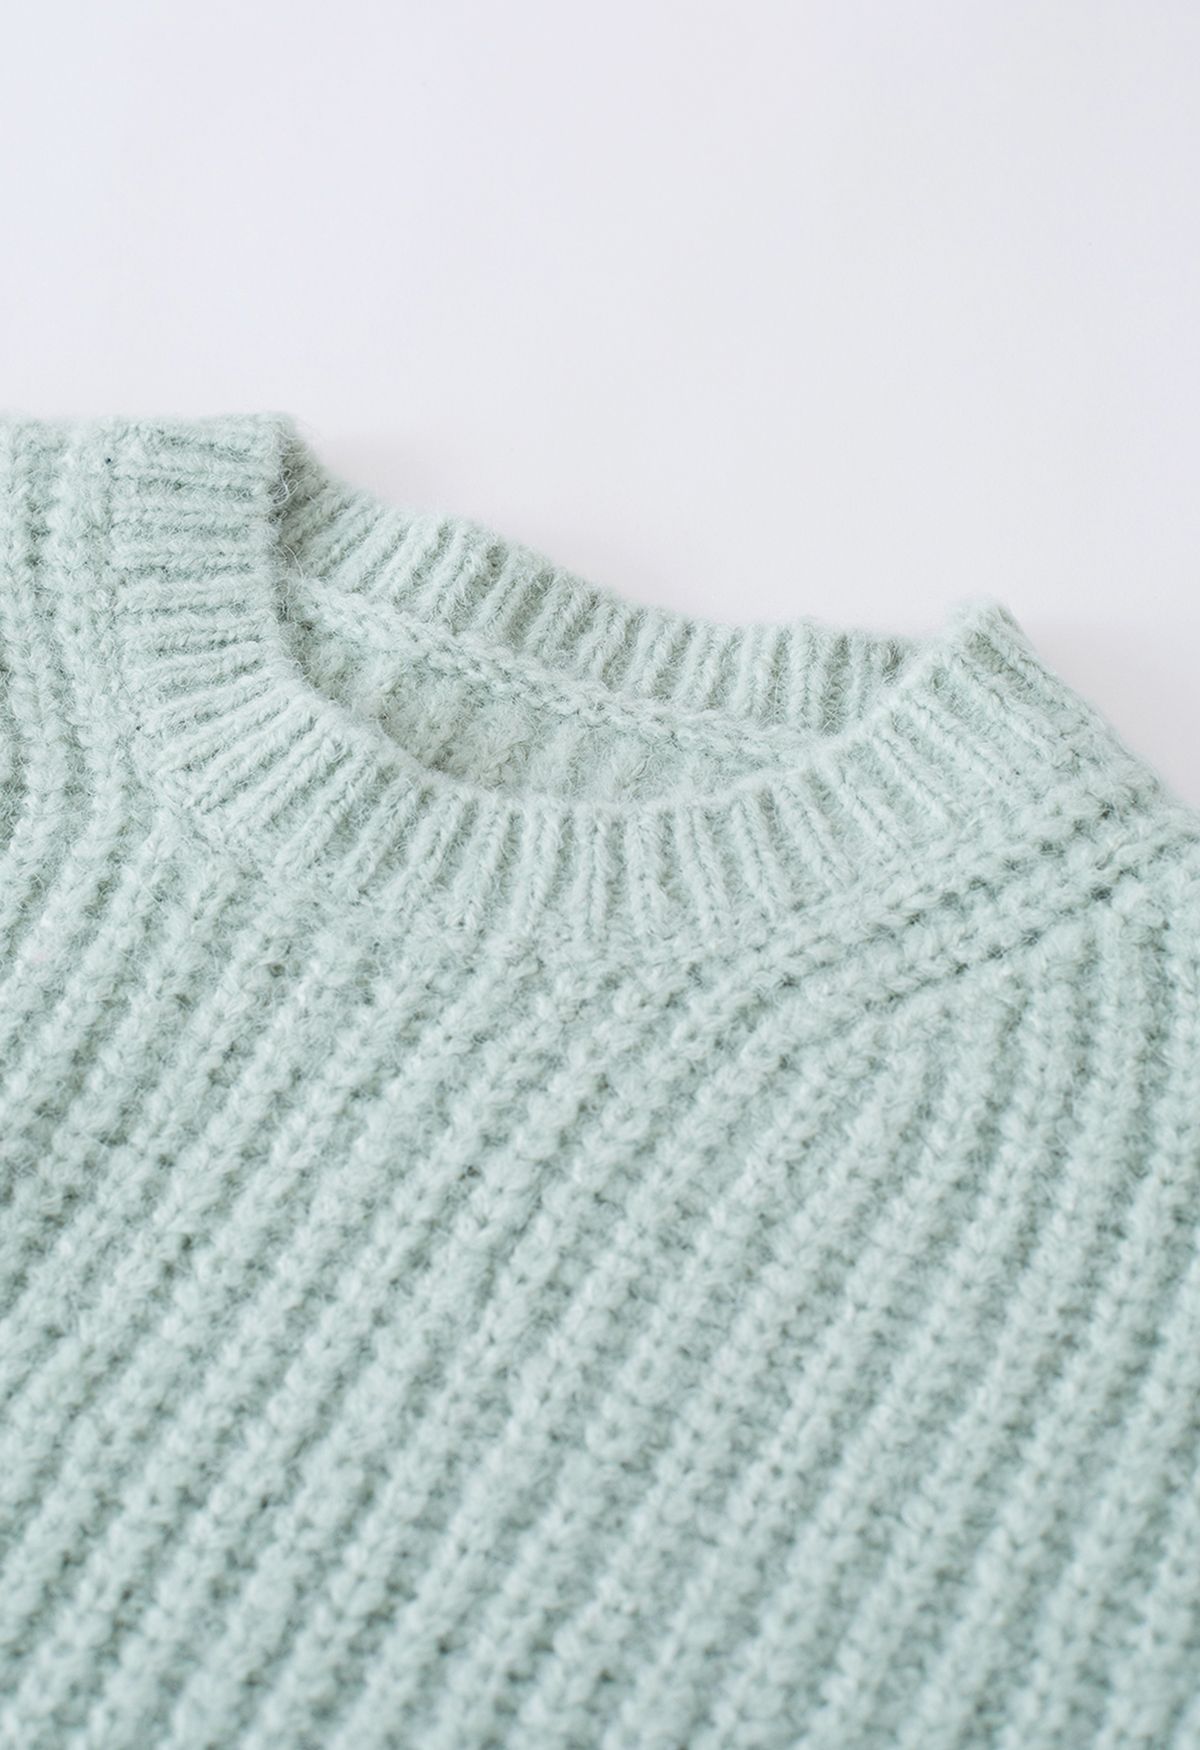 Round Neck Crop Knit Sweater in Mint